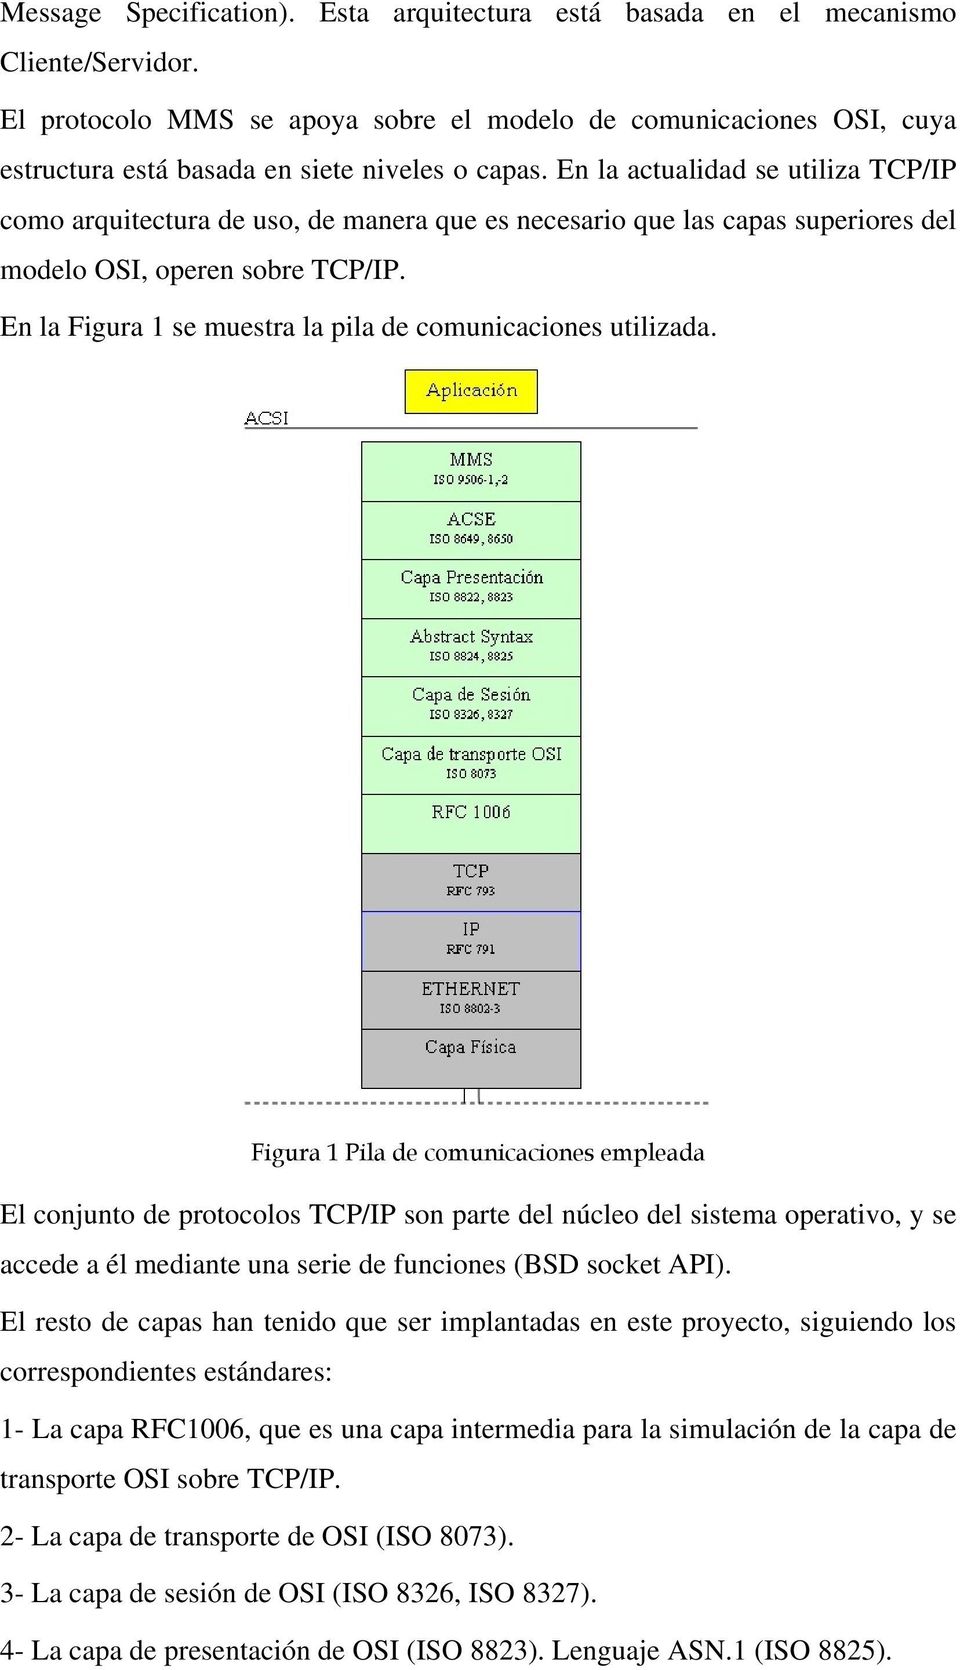 En la actualidad se utiliza TCP/IP como arquitectura de uso, de manera que es necesario que las capas superiores del modelo OSI, operen sobre TCP/IP.